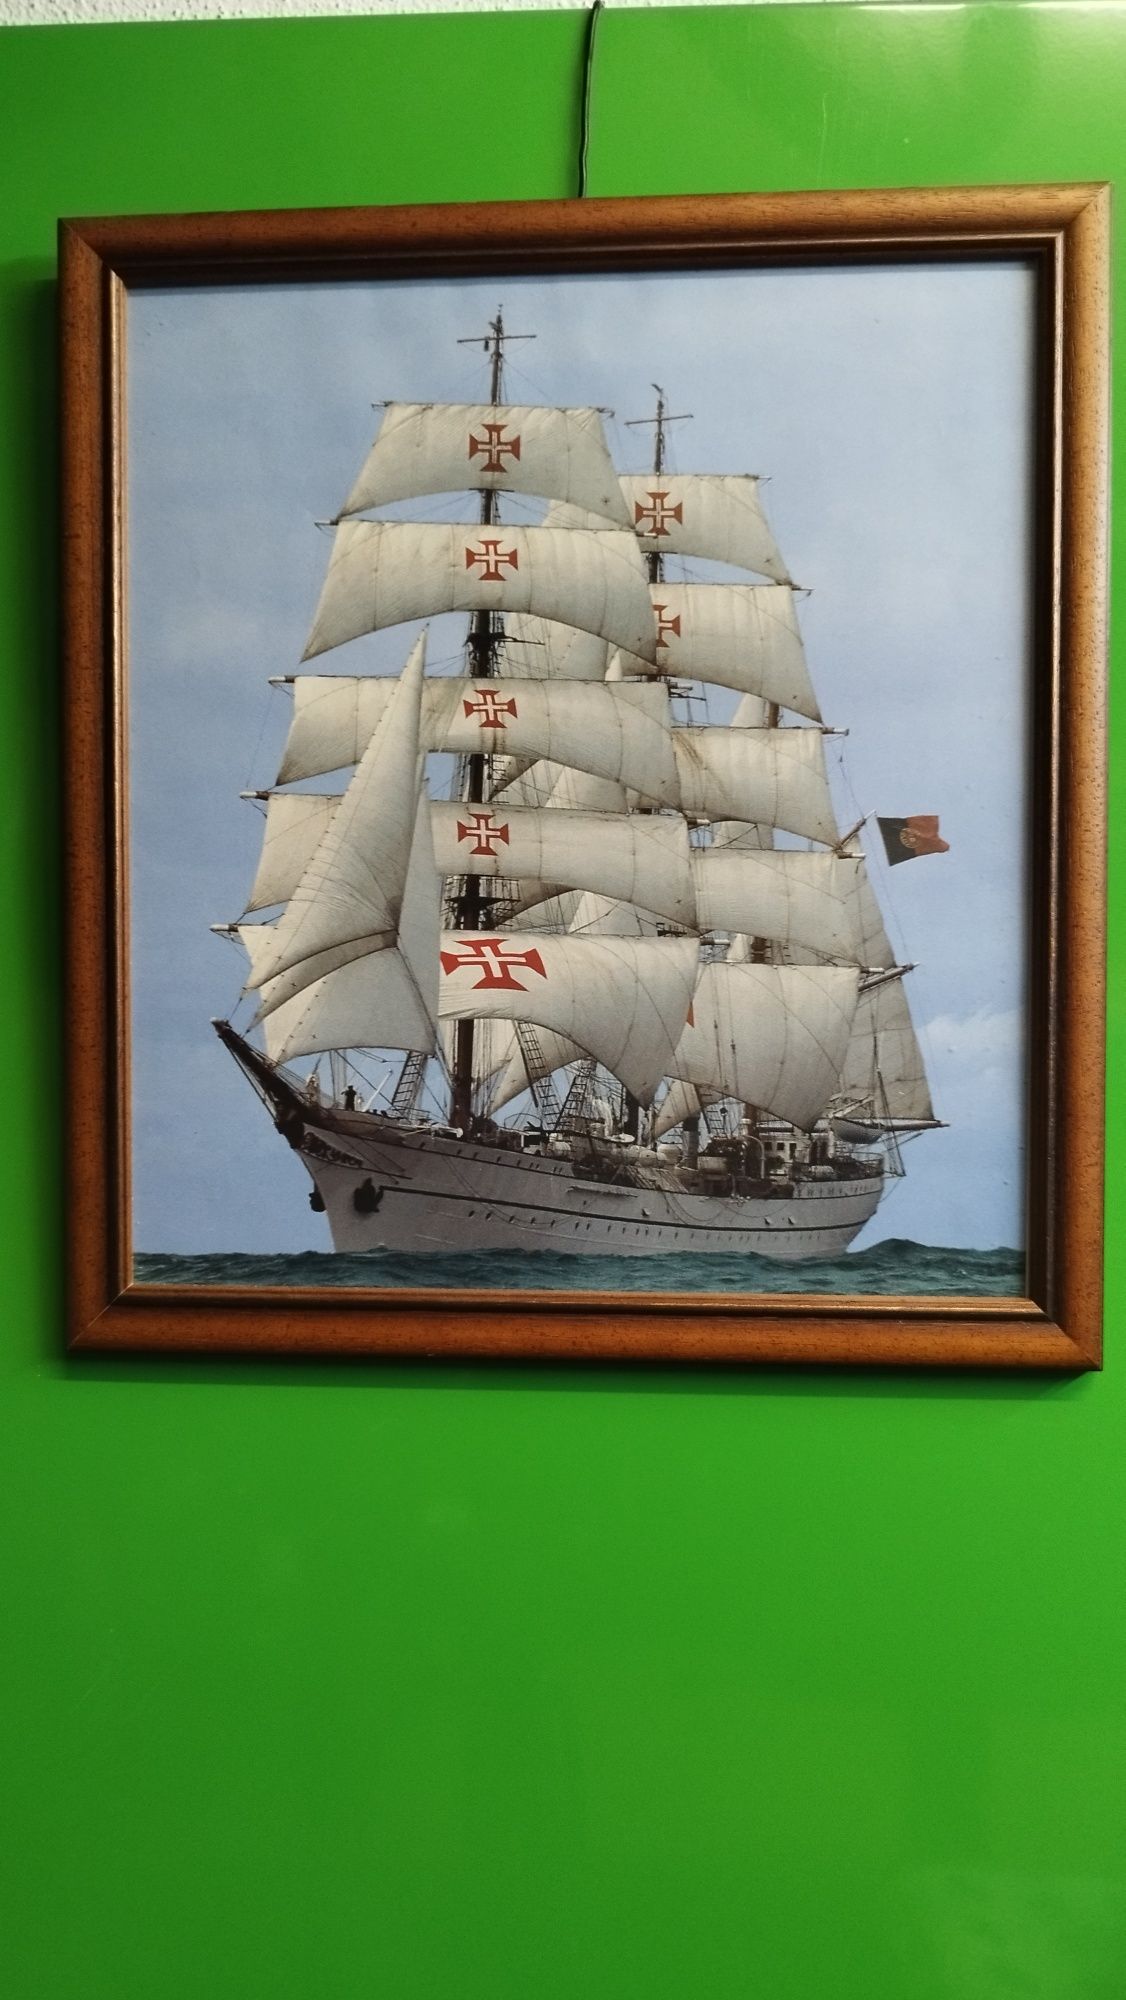 Quadros decorativos com imagens de barcos e veleiros

O pre